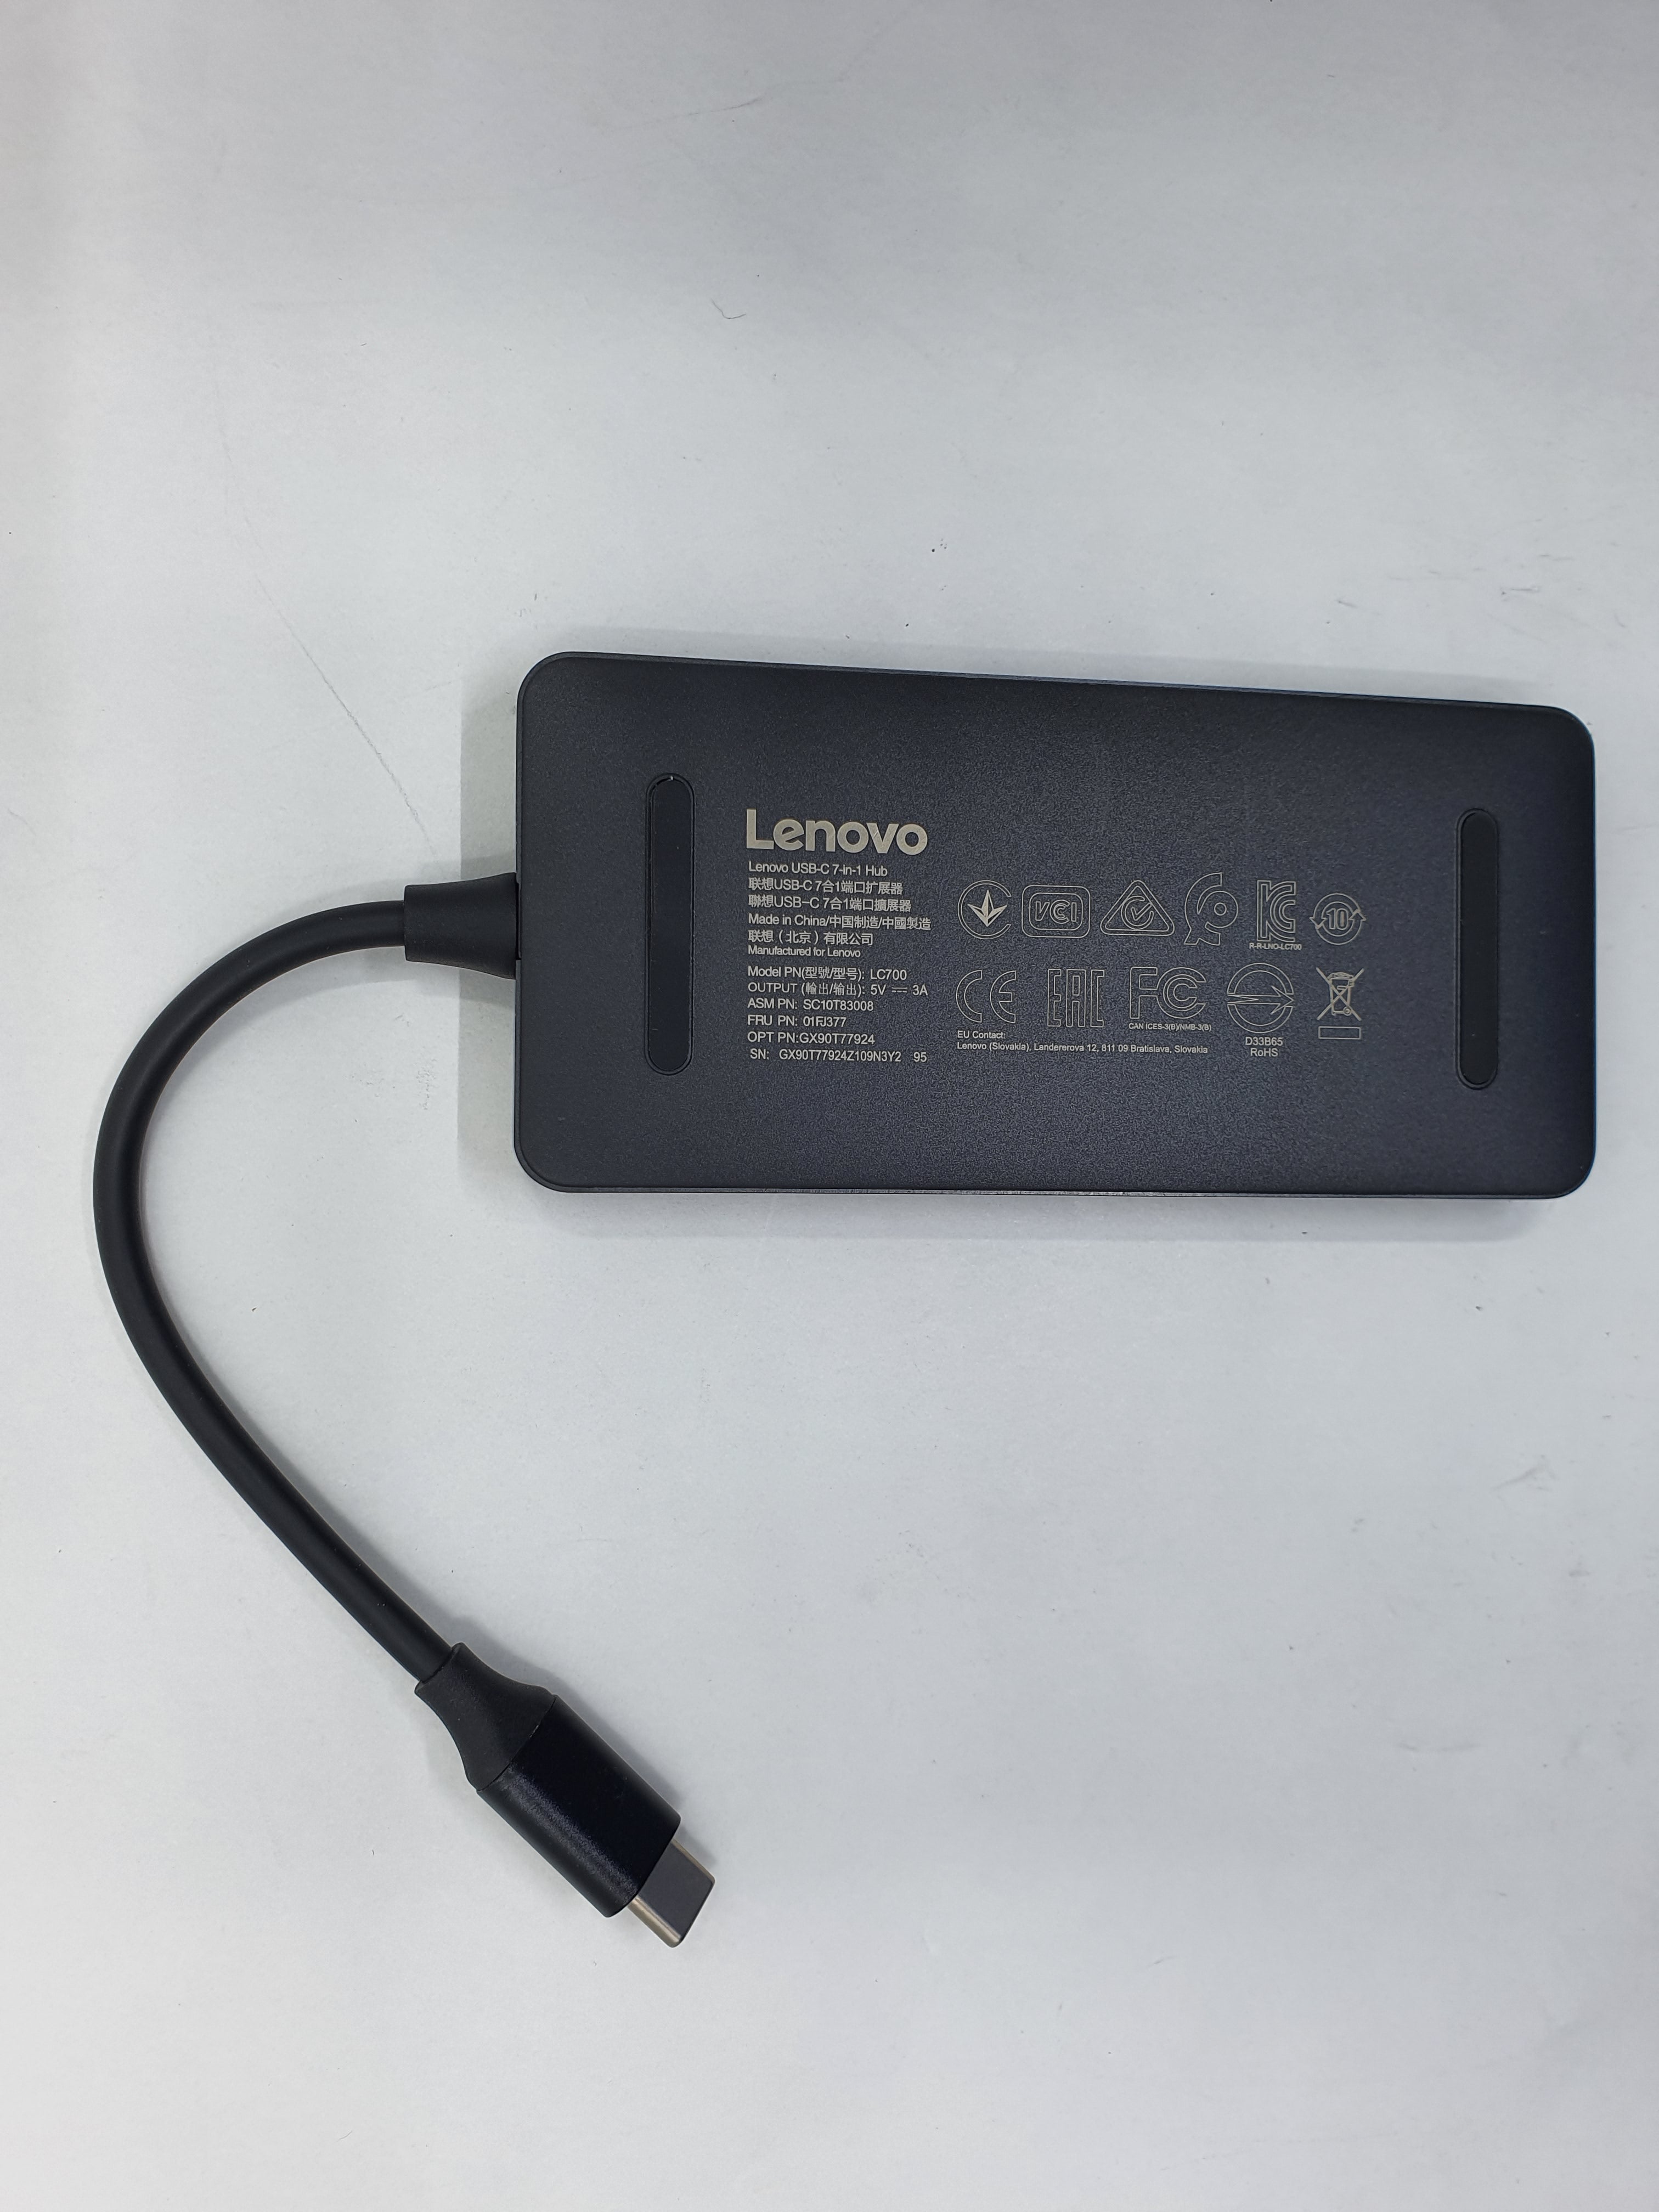 Lenovo USB-C 7-in-1 Hub Demo Unit